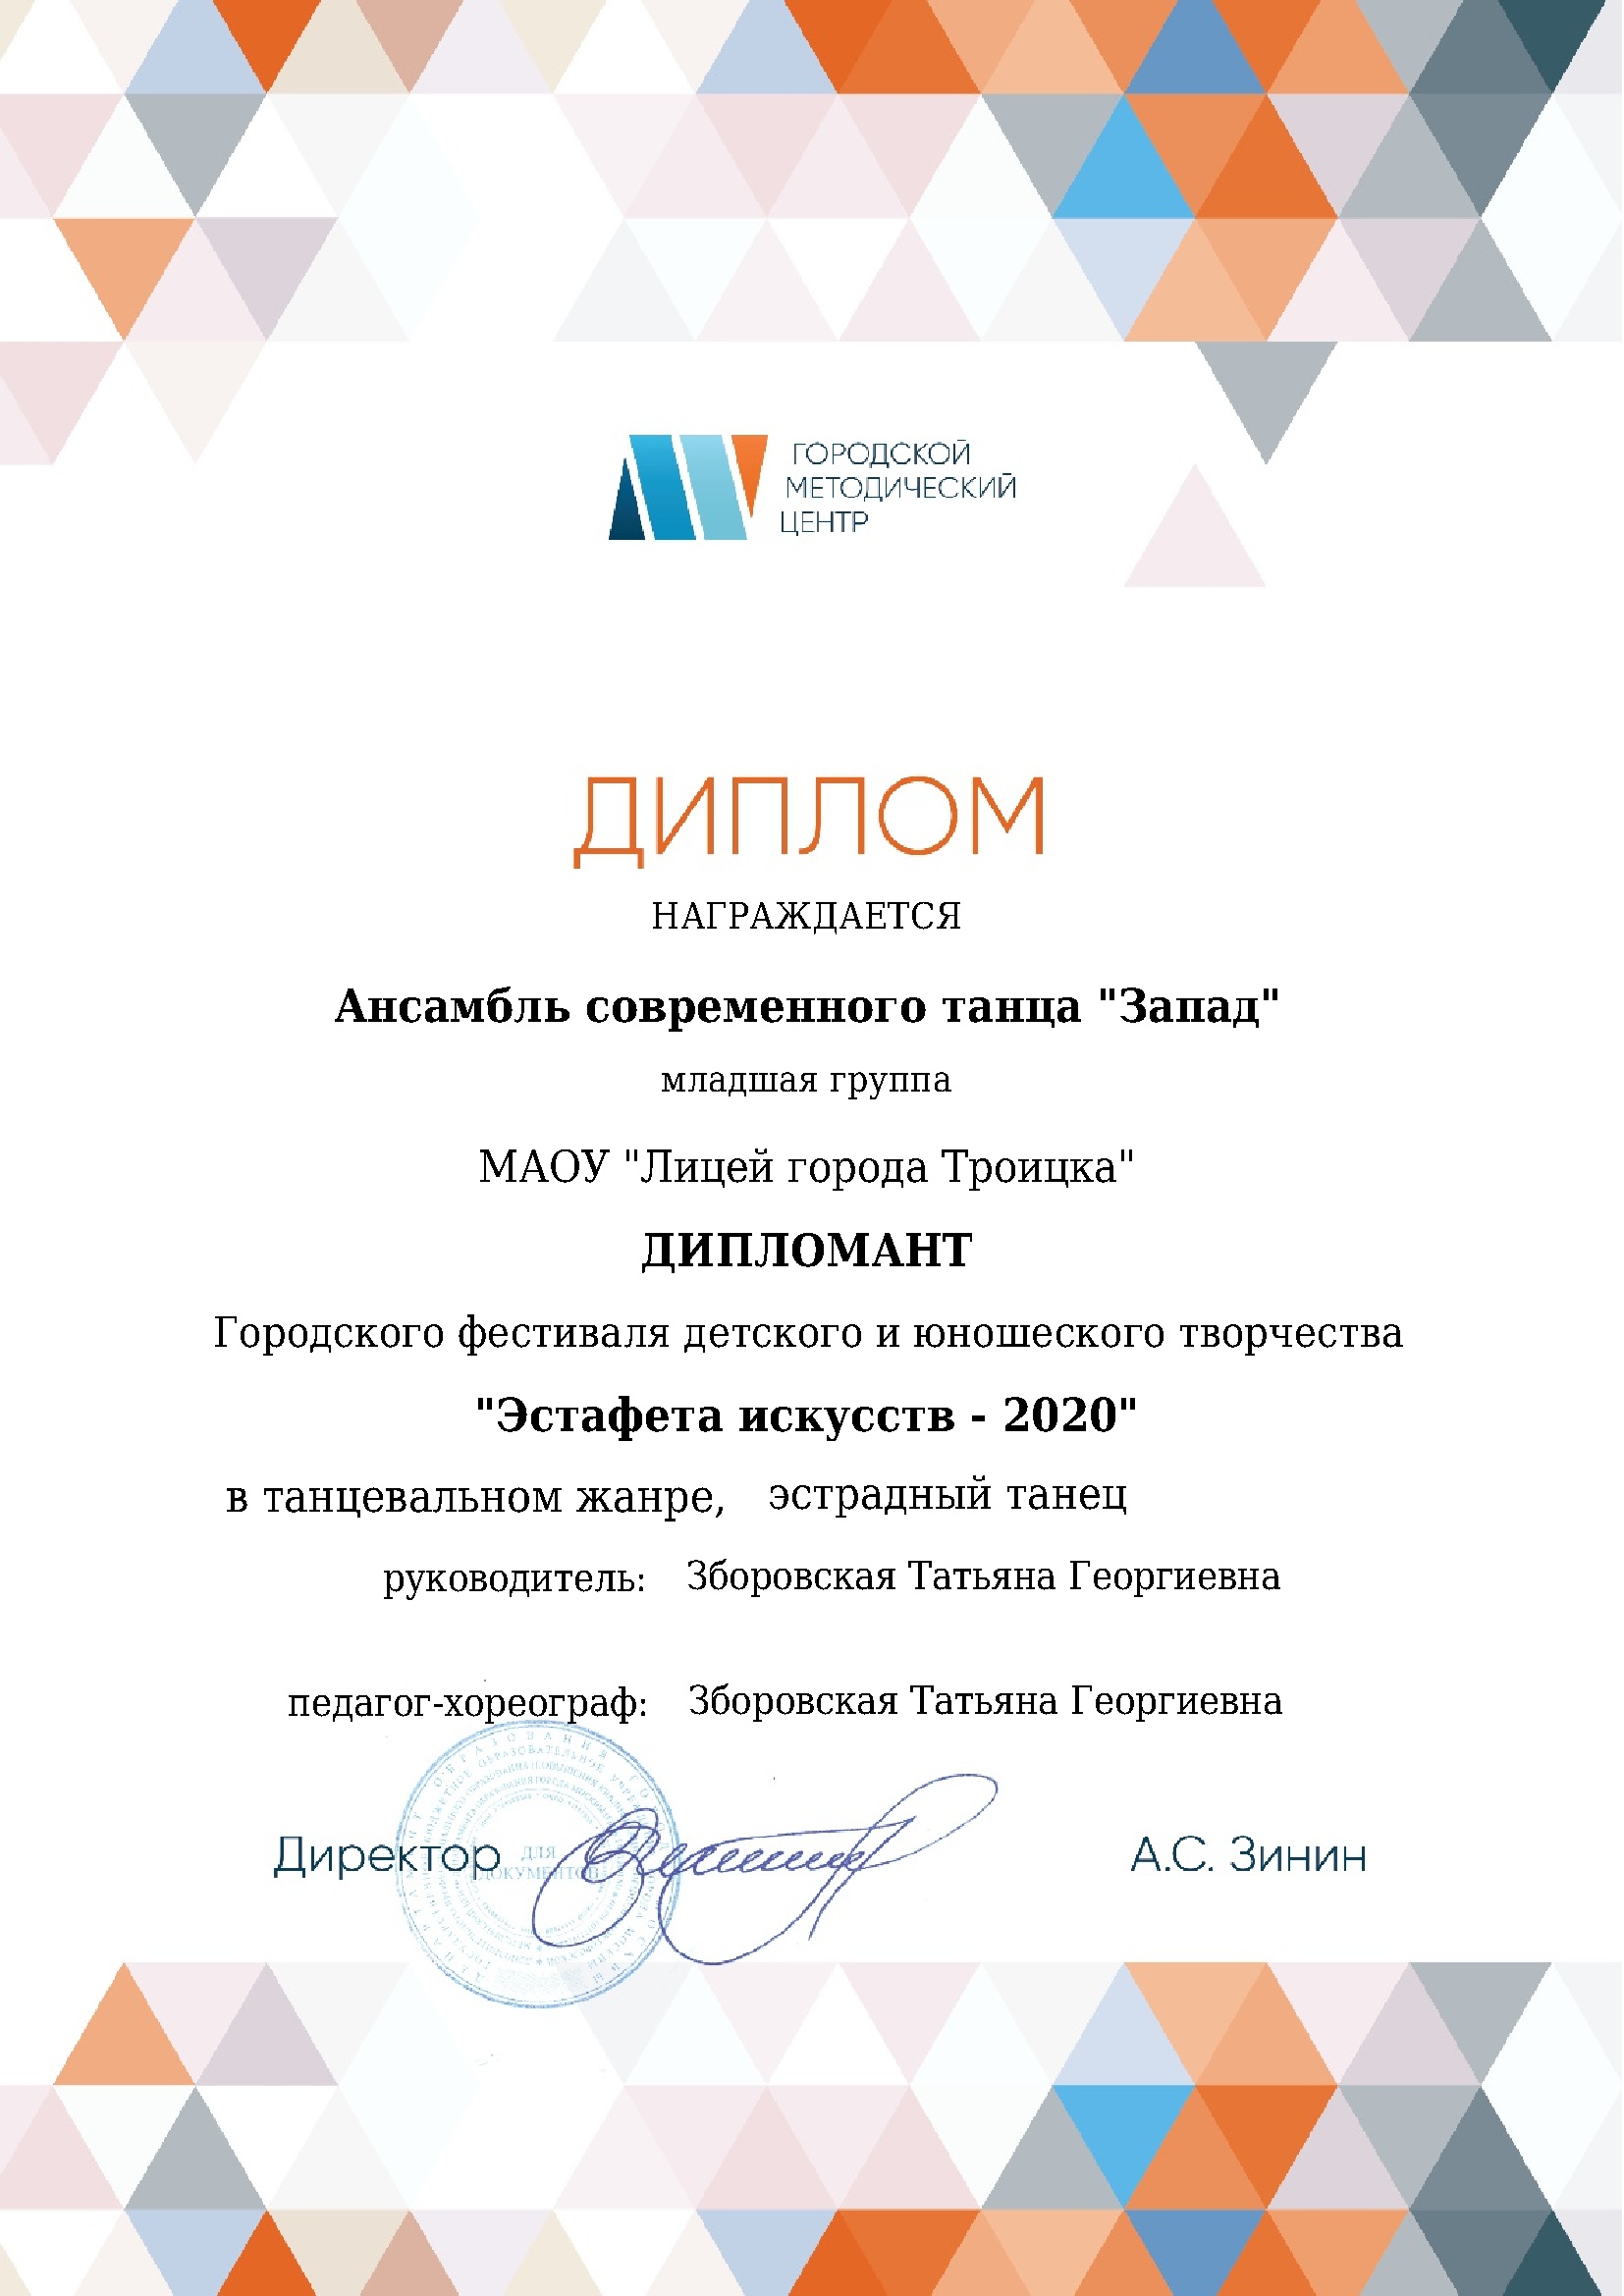 Диплом Эстафета искусств-2020 Эстрадный